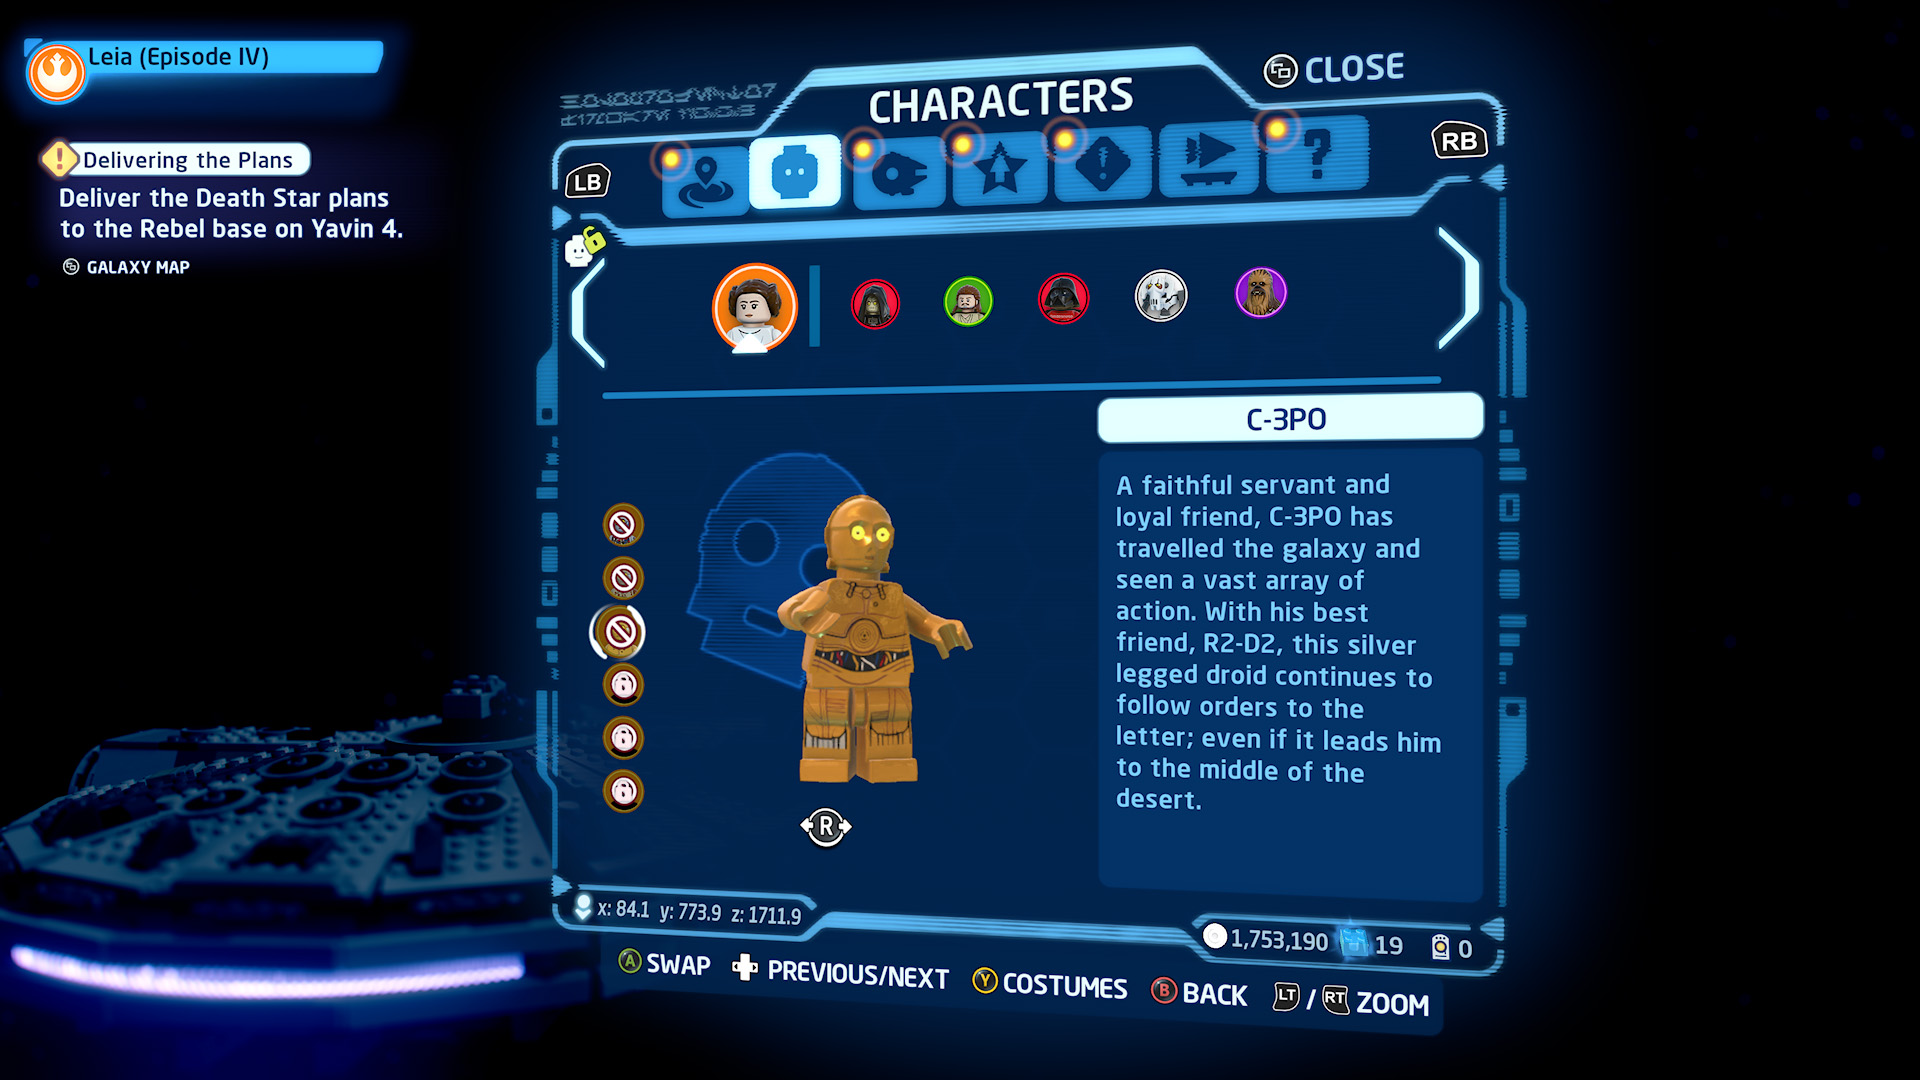 Lego Star Wars The Skywalker Saga characters